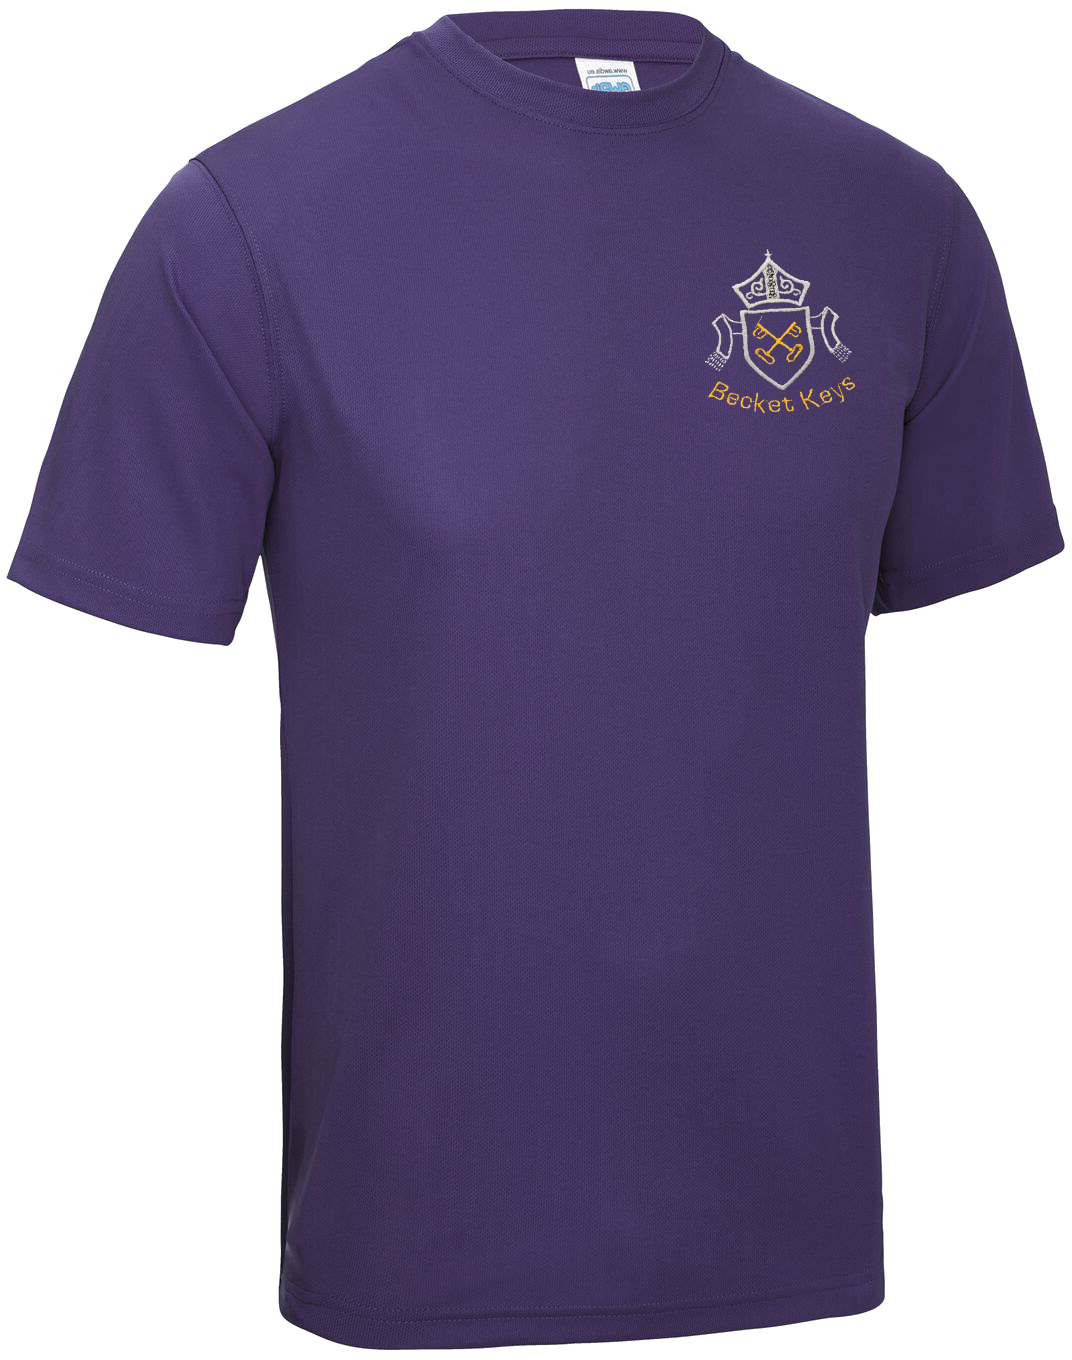 Becket Keys PE T shirt